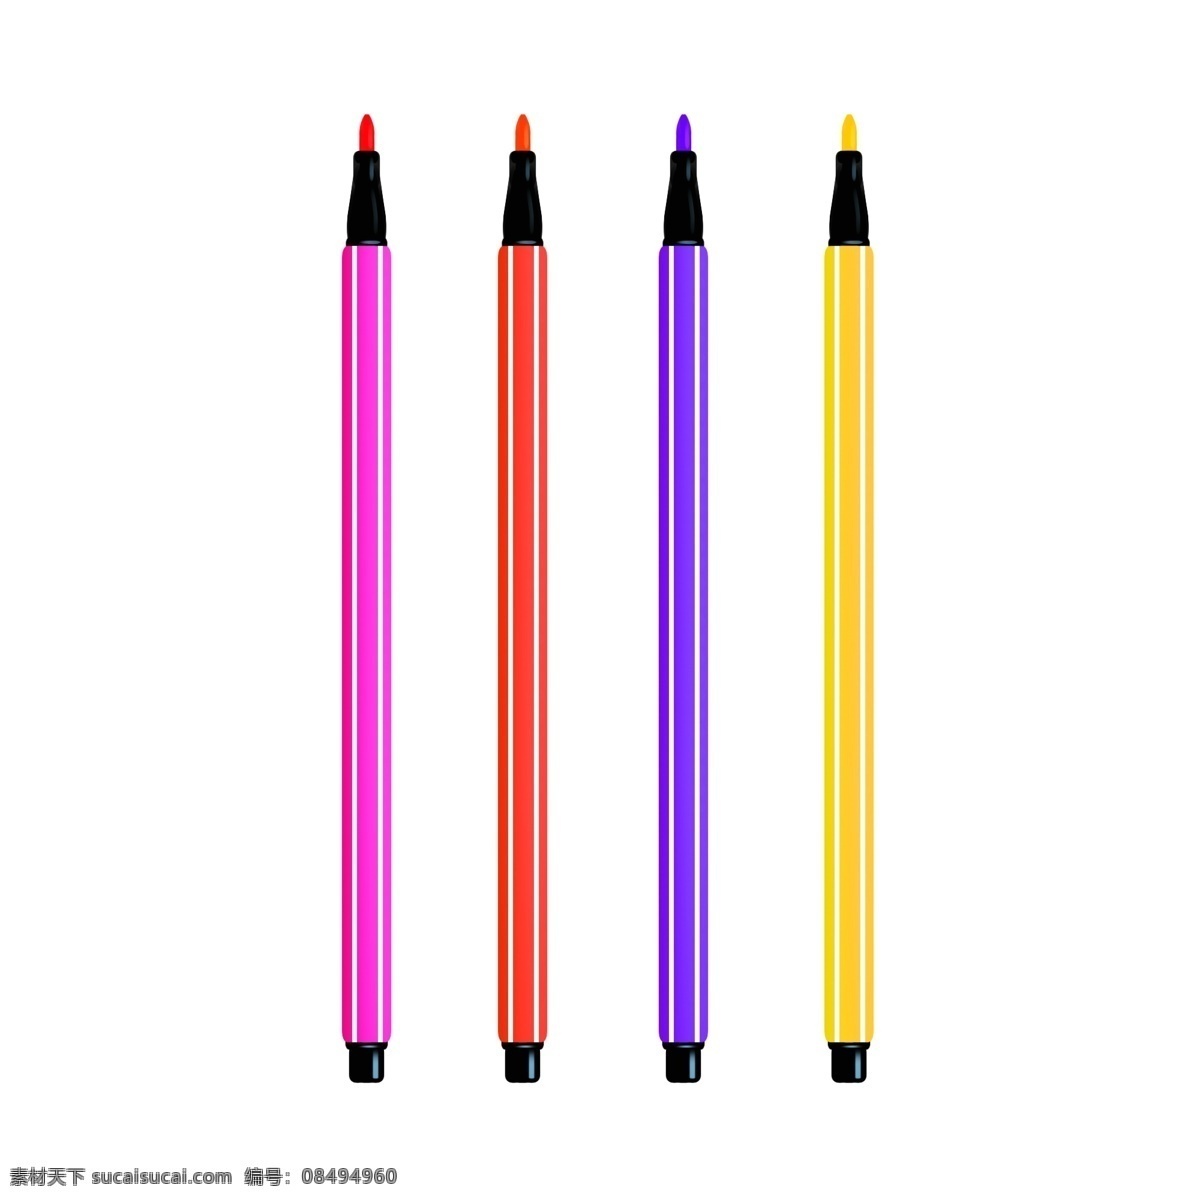 水彩笔 装饰 卡通 插画 水彩笔插画 彩色的笔 绘画用品 卡通插画 学习用品 学习教育 绘画工具 办公用品